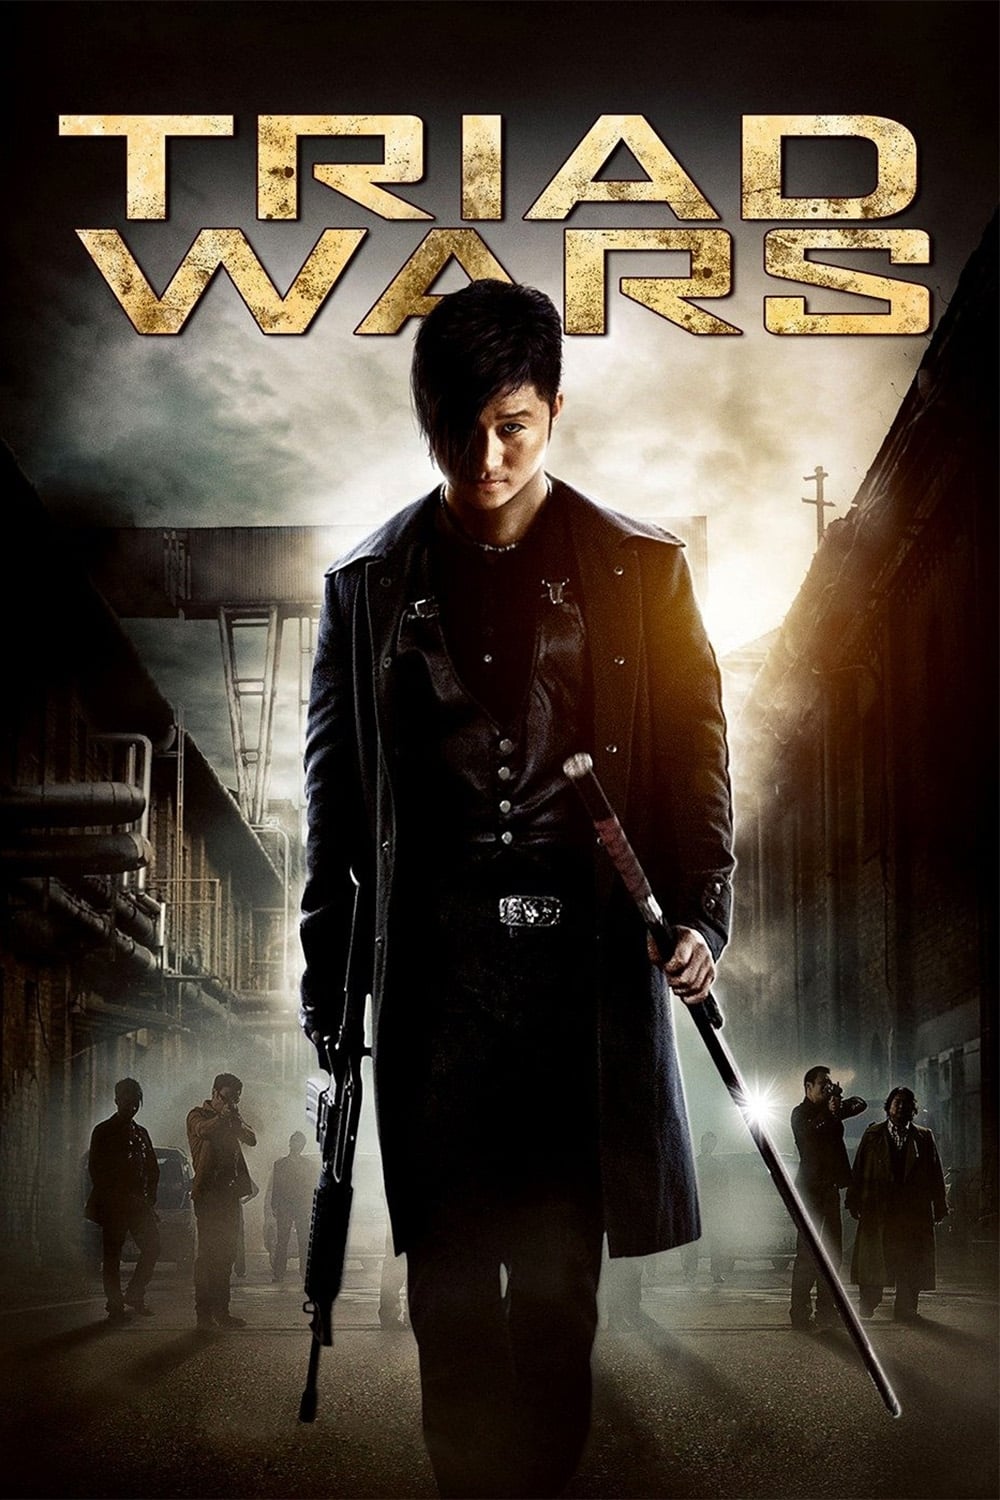 Triad Wars (2008)